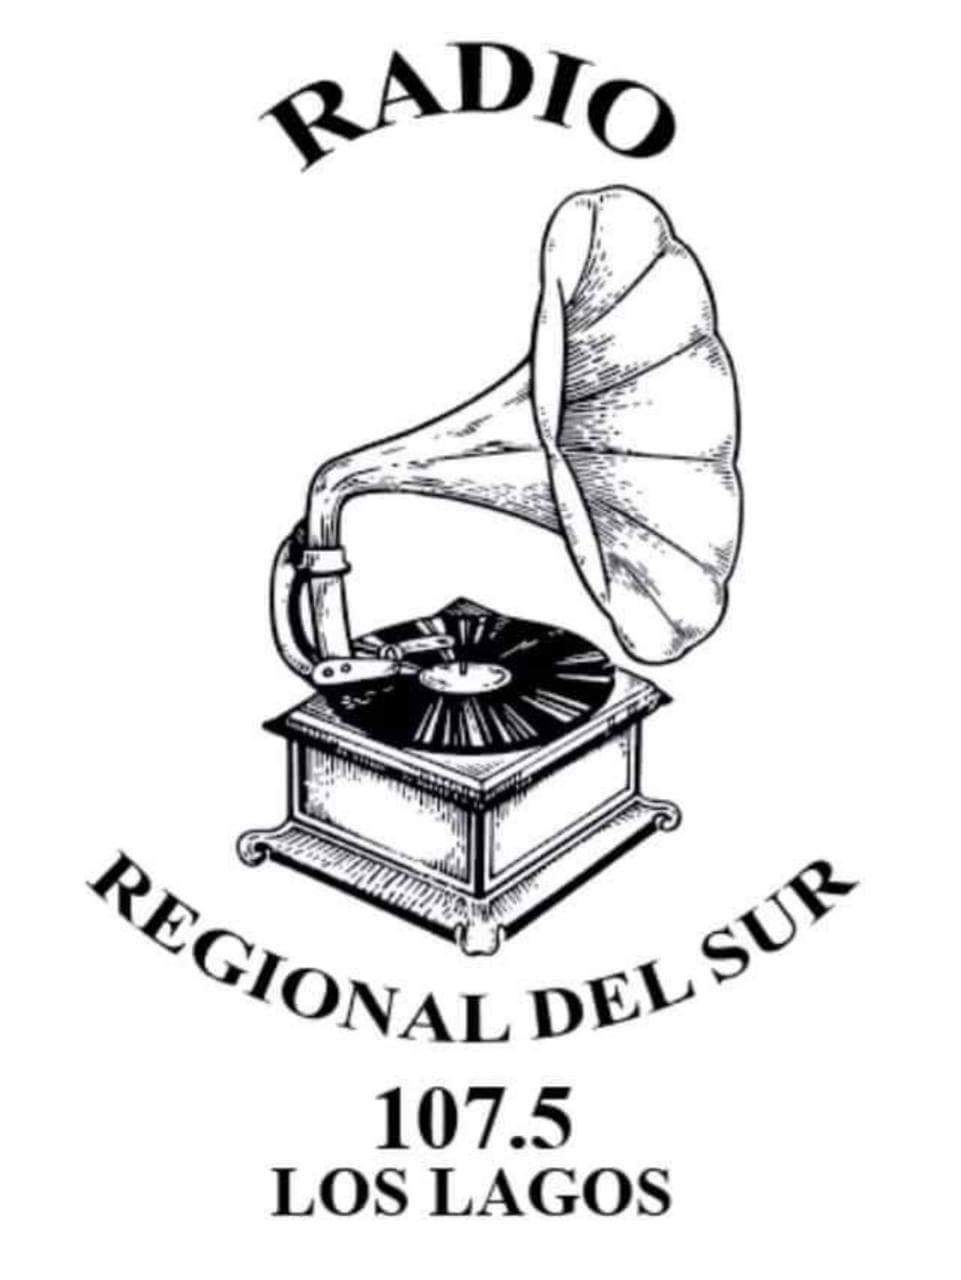 Radio Regional del Sur